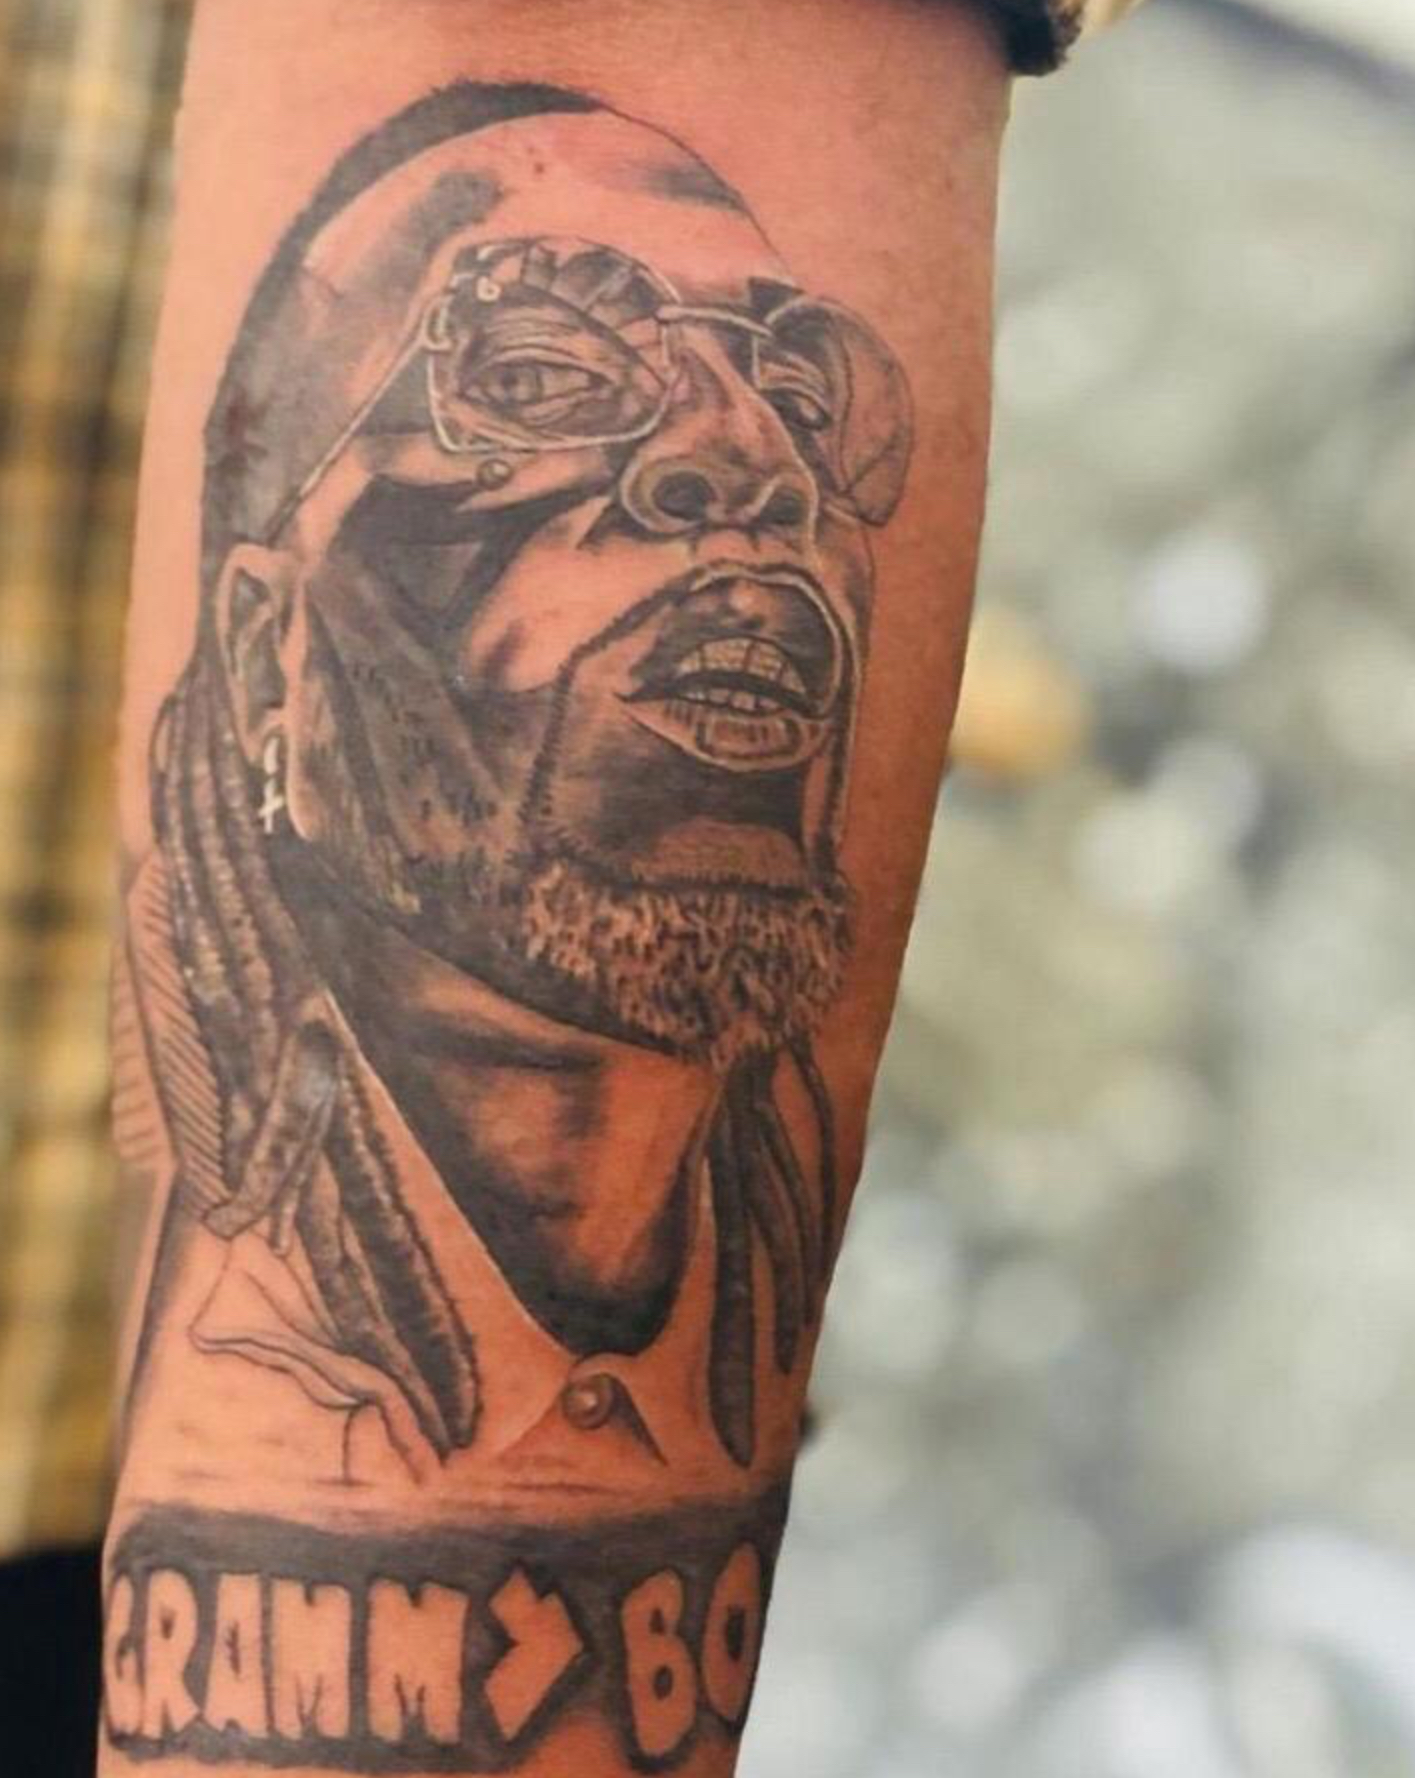 “Grammy Boy” – Fan Draws Tattoo Of Burna Boy In Honor Of Grammy Win